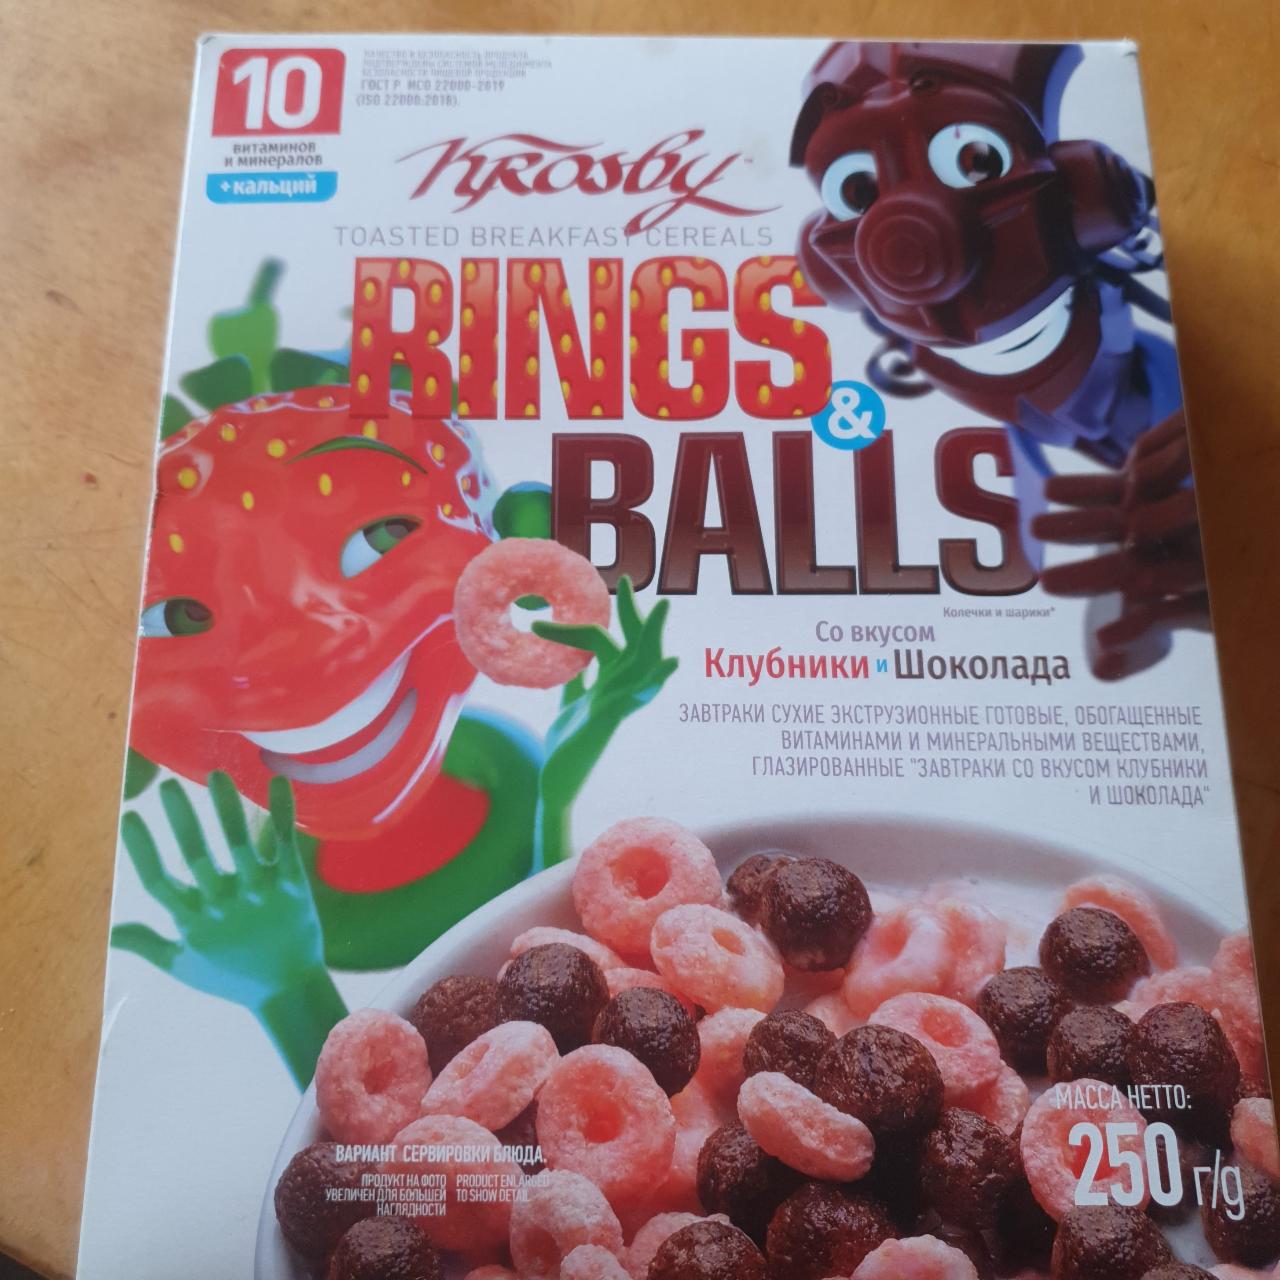 Фото - Сухой завтрак со вкусом клубники и шоколада rings&balls Krosby